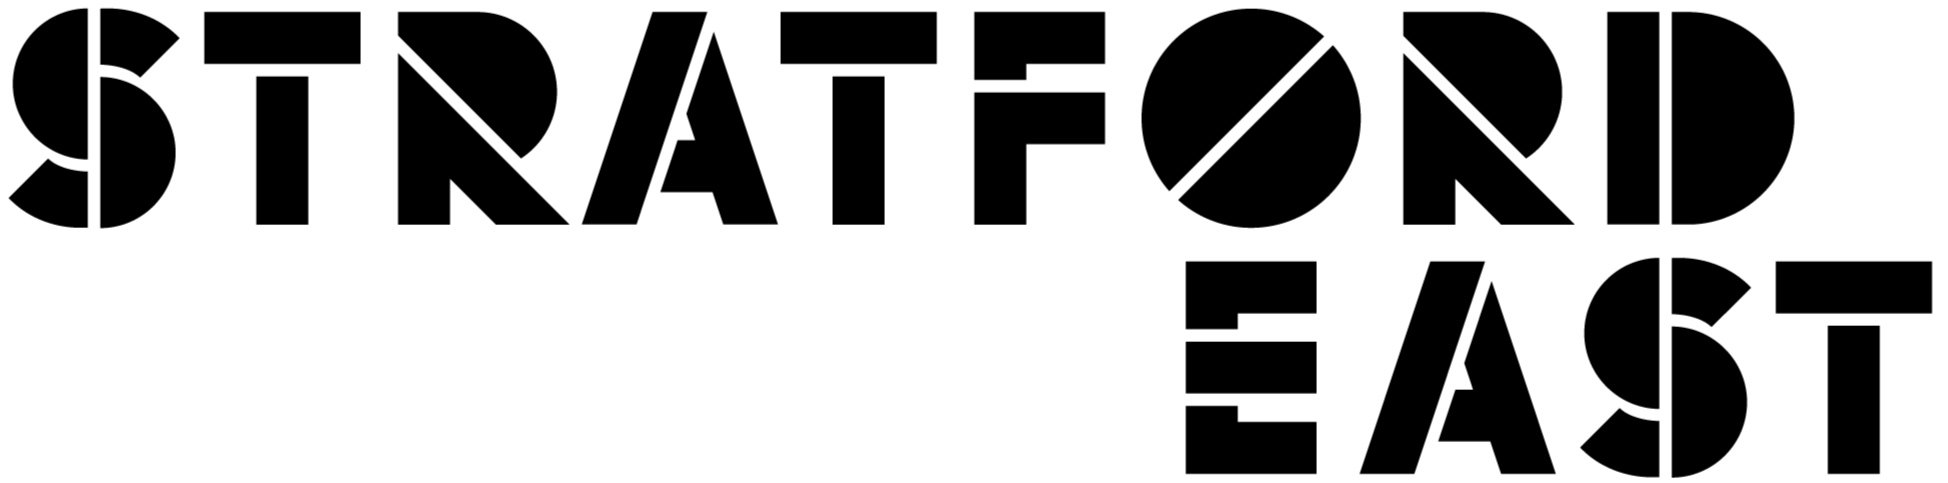 Stratford-East-Logo-Black1.jpg